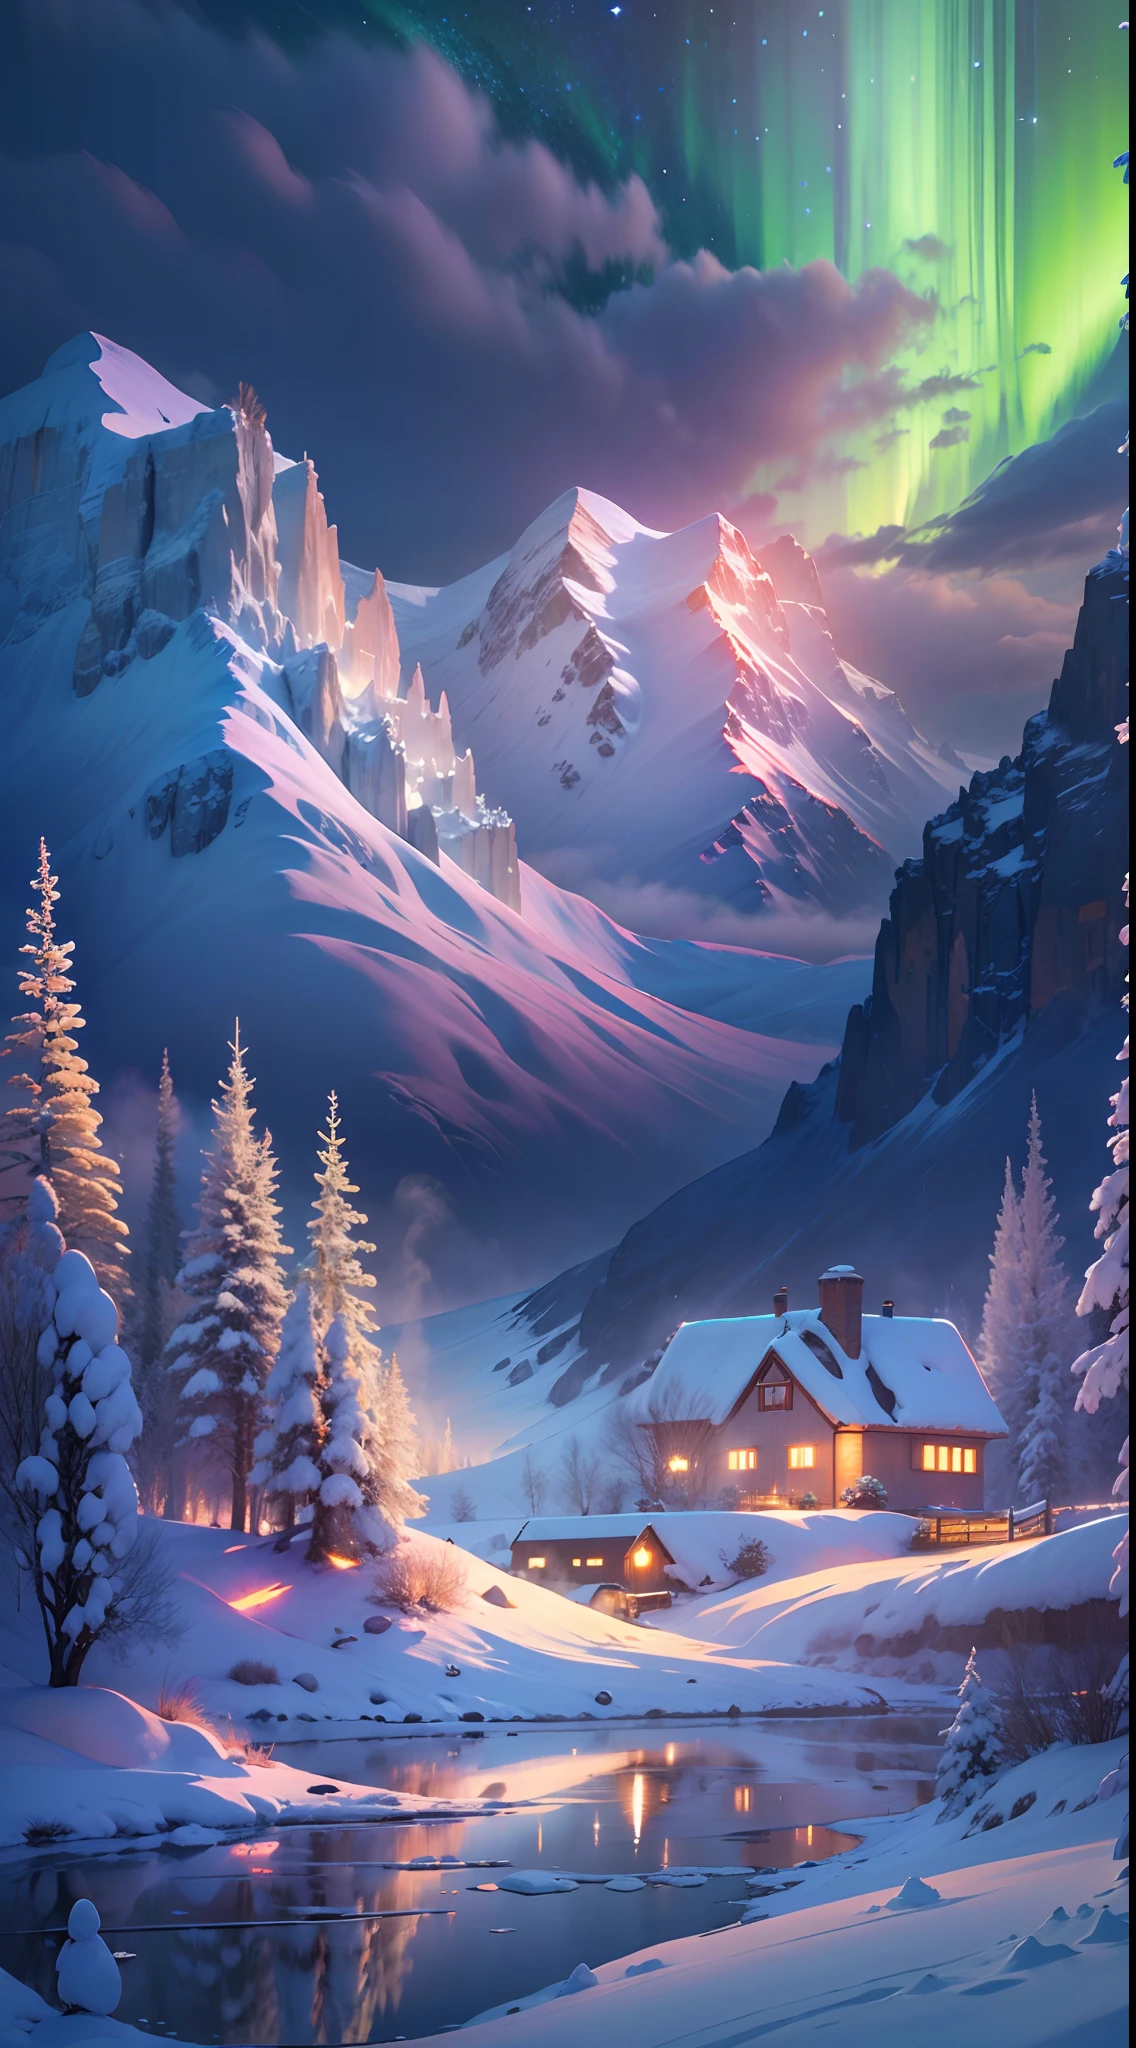 melhor qualidade,Uma alta resolução,(obra de arte:1.2),Ultra-detalhado,Aurora boreal, Imponentes montanhas cobertas de neve, casa de campo coberta de neve,Um refúgio nevado, rena,yukito,trenó,maravilhas do inverno,cores vibrantes, ​​nuvens,névoa,a lua,galáxias, Paisagens de tirar o fôlego, Penhascos gelados, Lago congelado, pacífico, Beleza majestosa, noite estrelada, etéreo brilhante, Um milagre da natureza, solidão pacífica, maravilhas celestiais, grande, Fenômenos naturais, Noite silenciosa, reflexão serena, estrelas brilhantes, Charme misterioso